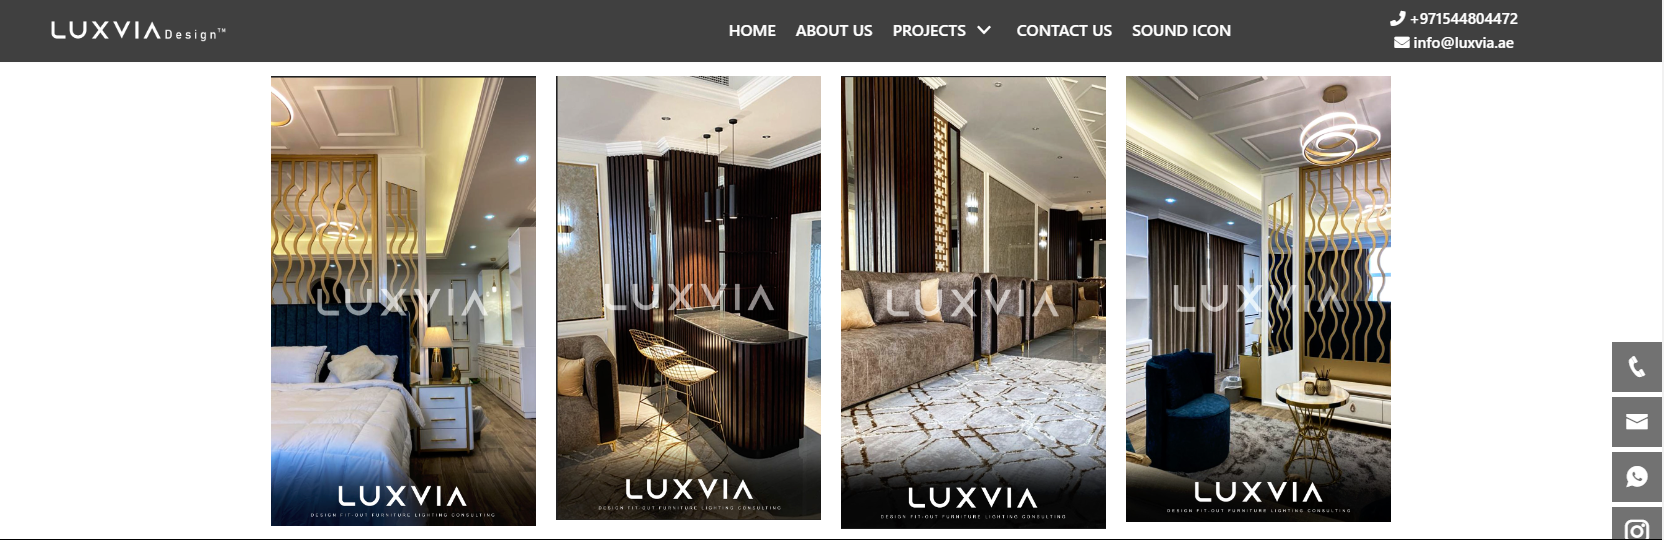 Luxvia Design 1